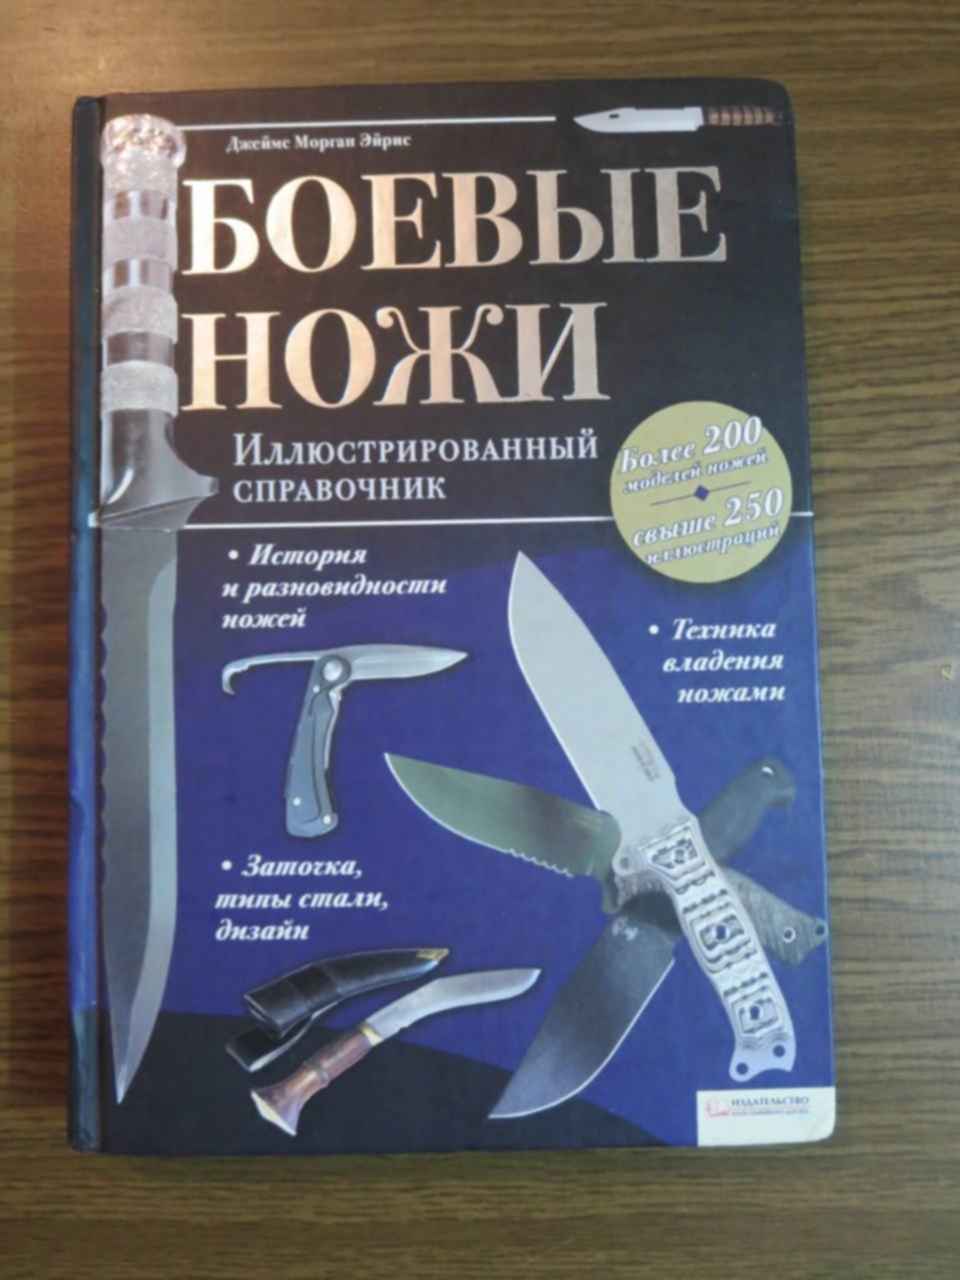 Достать ножи суть. Книга ножи. Книга боевые ножи. Достать ножи книга. Книжный нож.